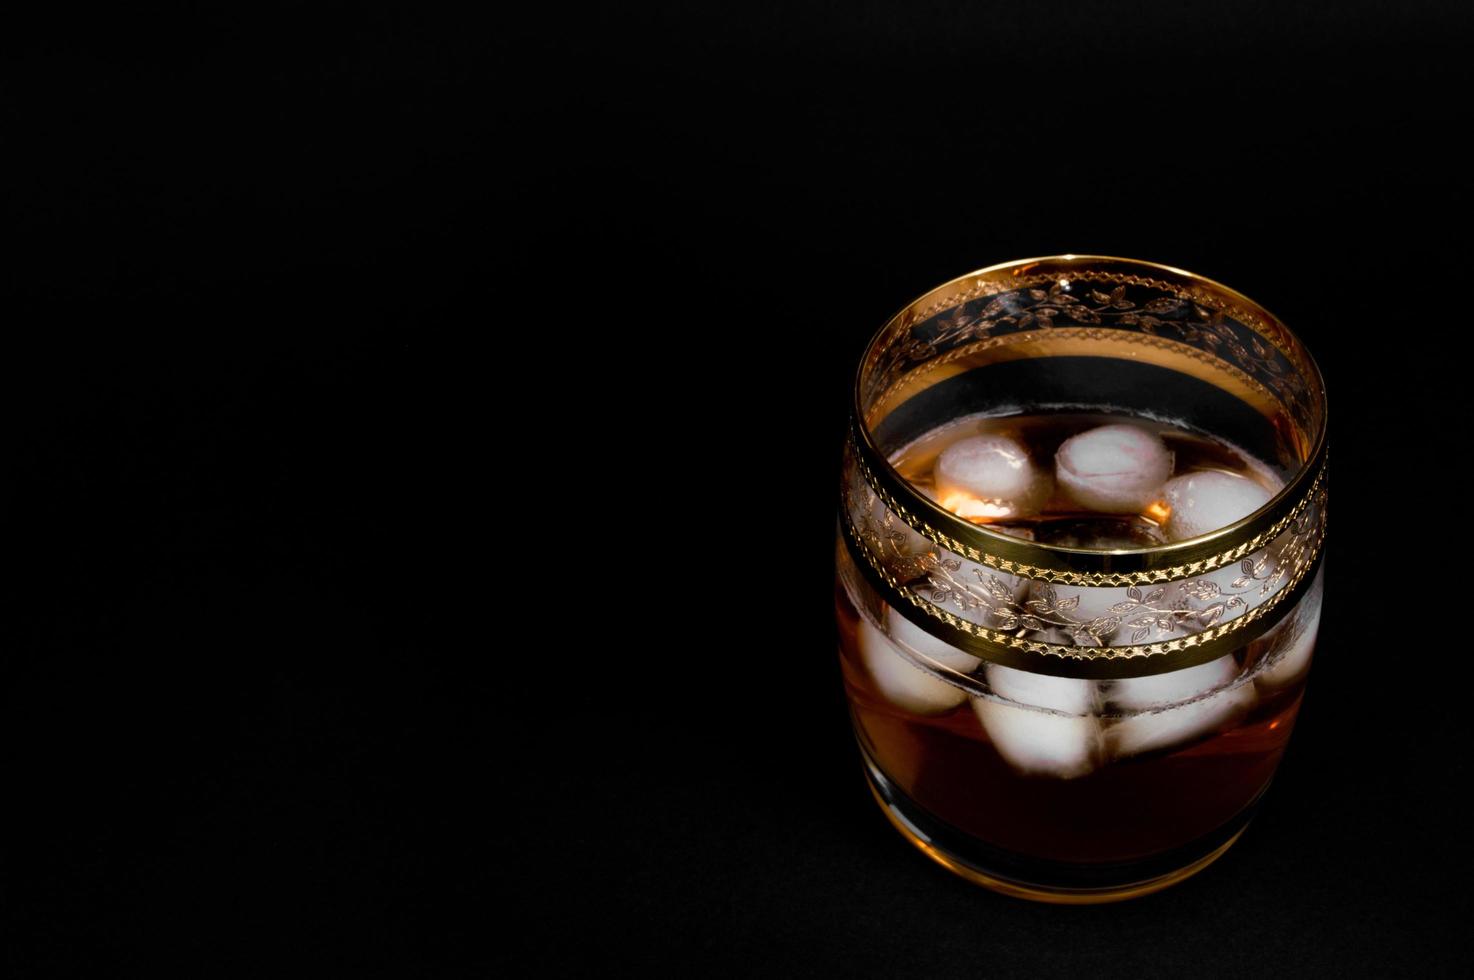 Glas dunkelroter Whisky Brandy oder Bourbon foto